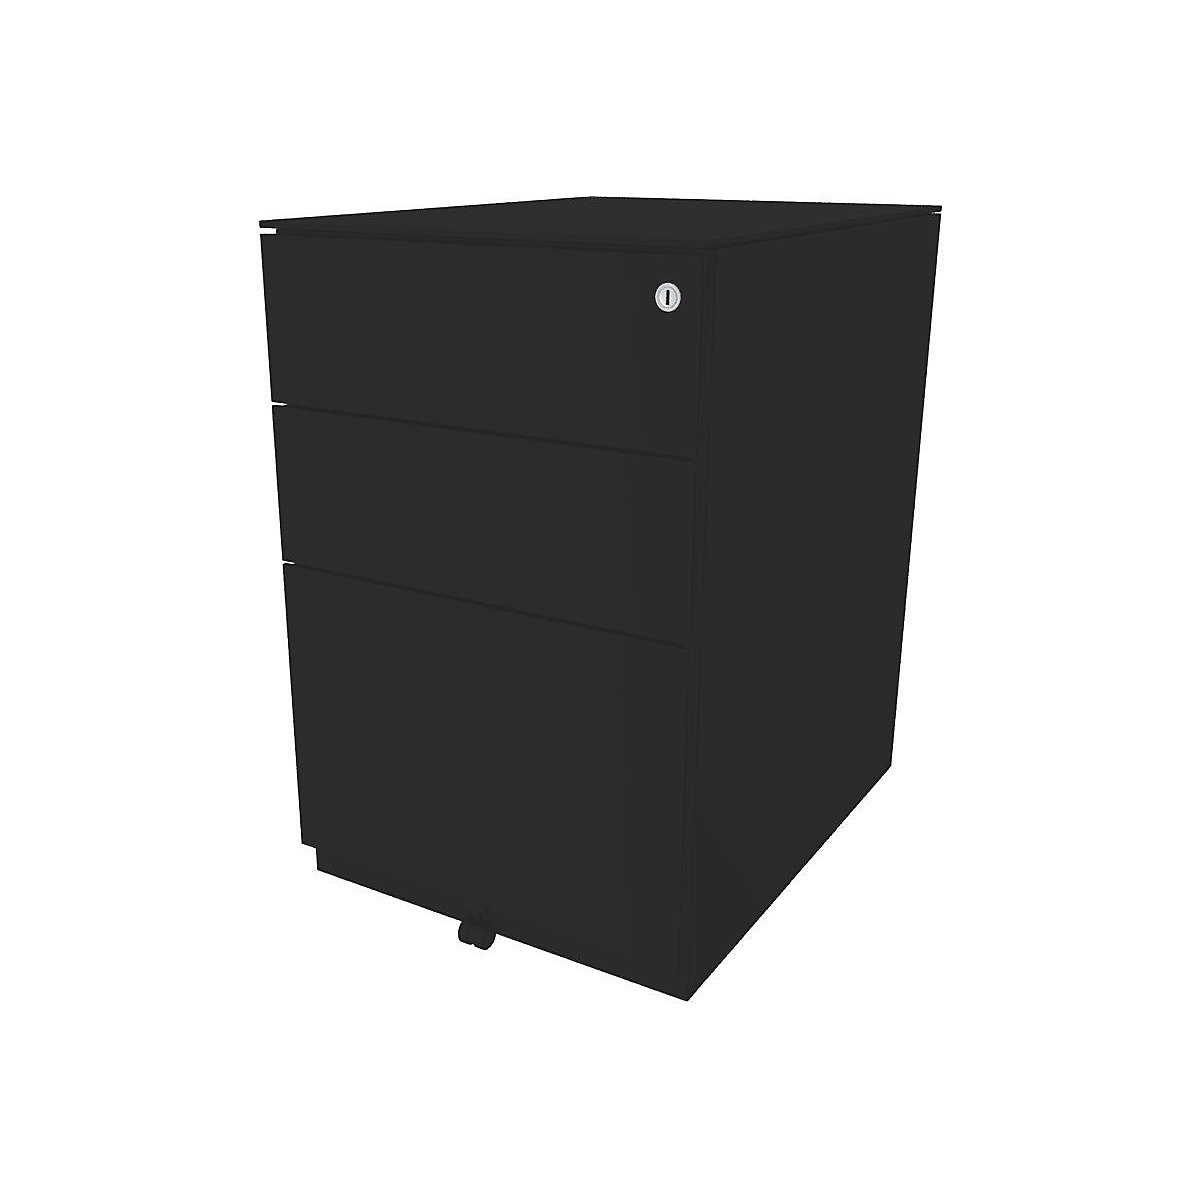 Rollcontainer Note™, mit 2 Universalschubladen, 1 Hängeregistratur BISLEY, HxBxT 652 x 420 x 565 mm, mit Top, schwarz-1